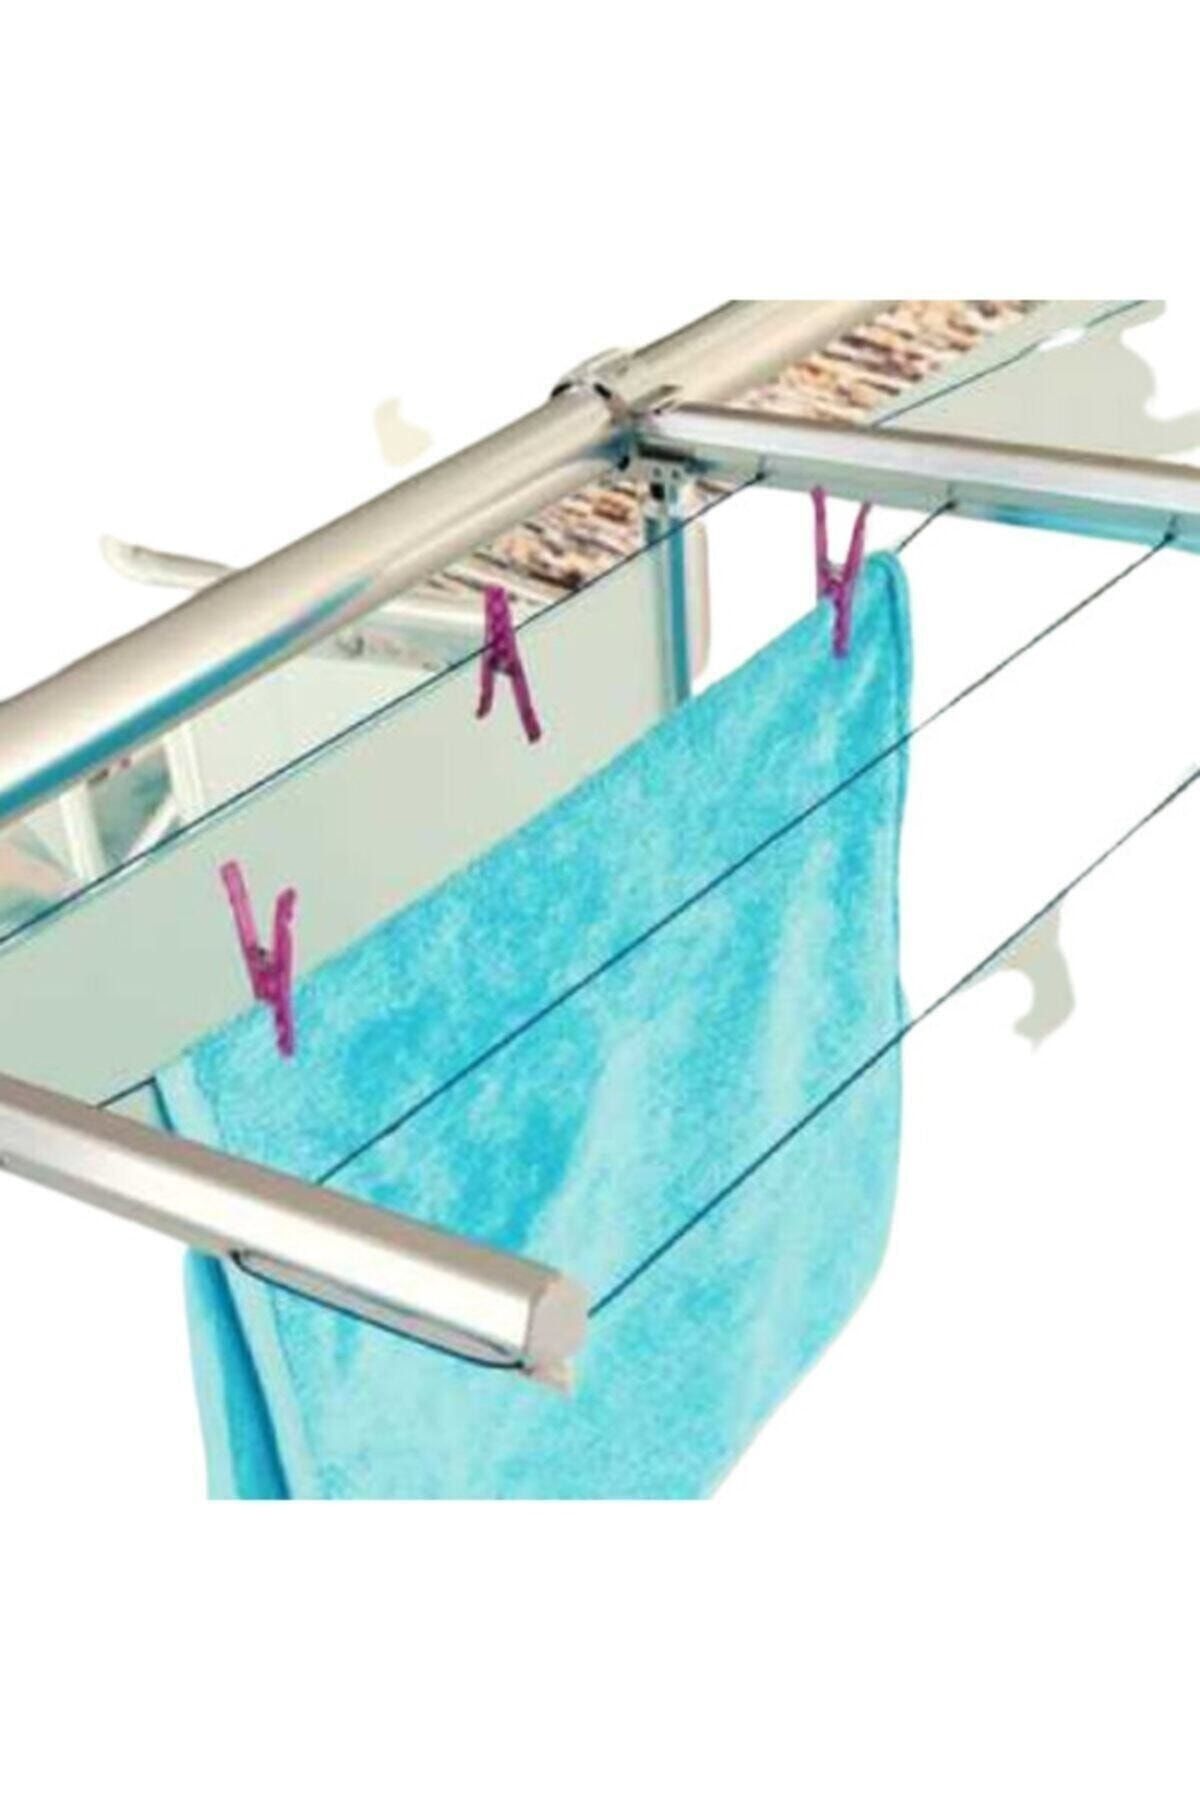 KURT HOME Alüminyum Balkon Çamaşırlık Kurutmalık Çamaşır Askısı Askılığı FUGBLKAS